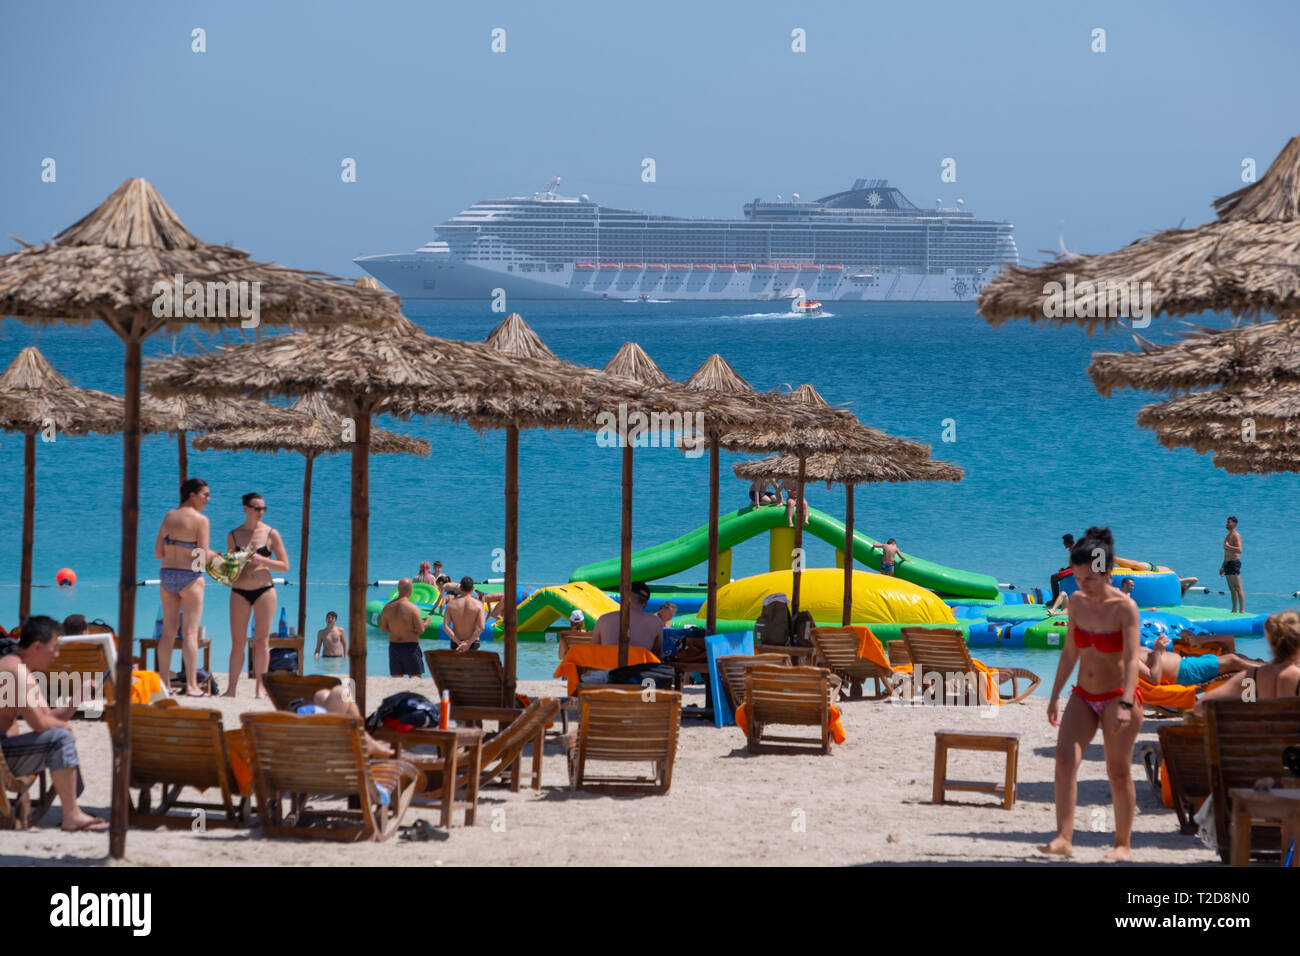 Die Menschen genießen den Strand bei Sir Bani Yas Island mit dem Kreuzfahrtschiff MSC Splendida auf See im Hintergrund Stockfoto